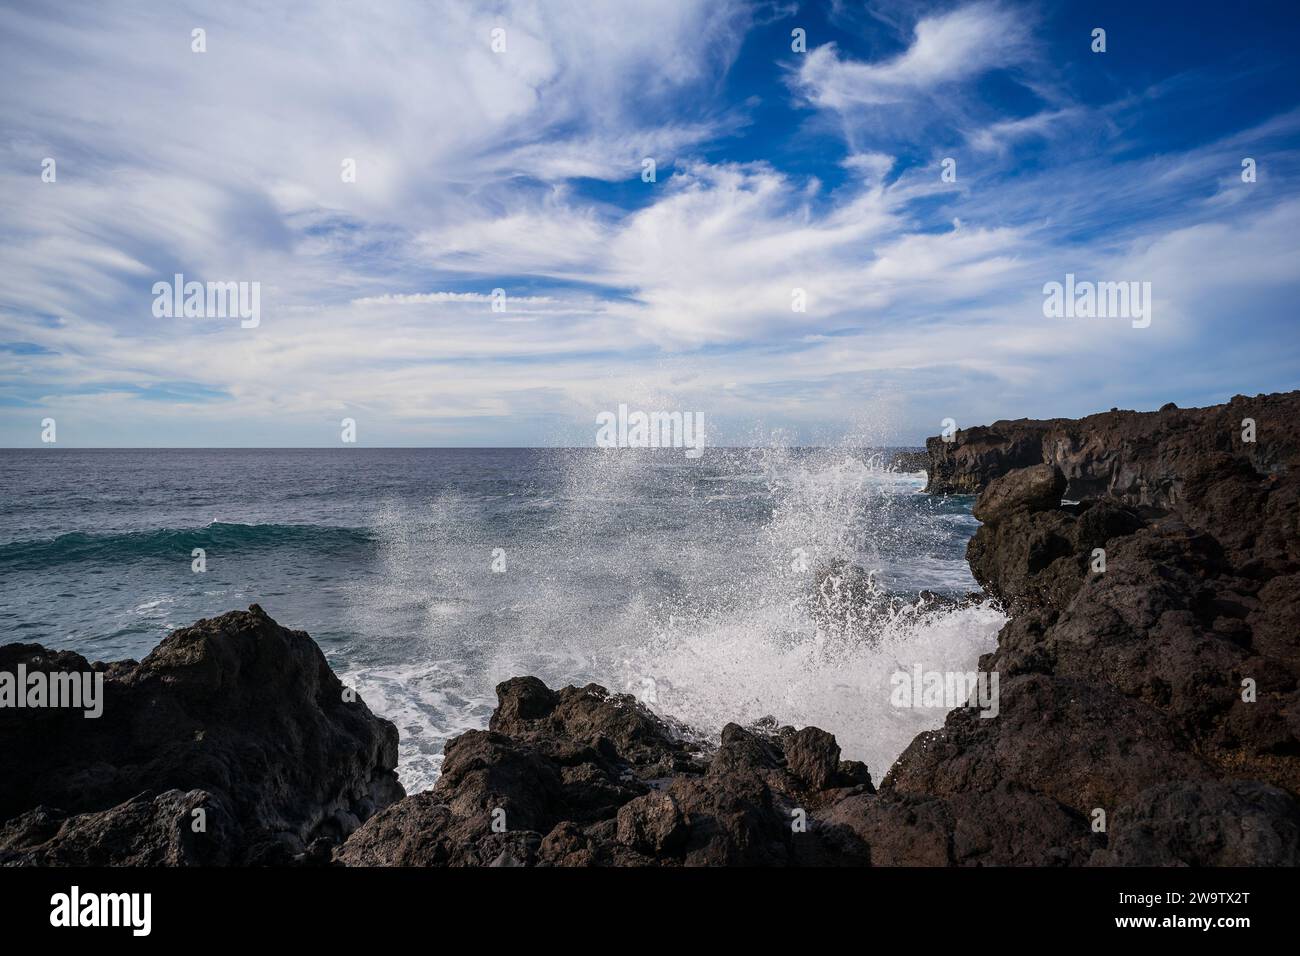 Meereslandschaft. Felsiges Ufer eines tosenden Ozeans. Lanzarote, Kanarische Inseln. Spanien. Stockfoto